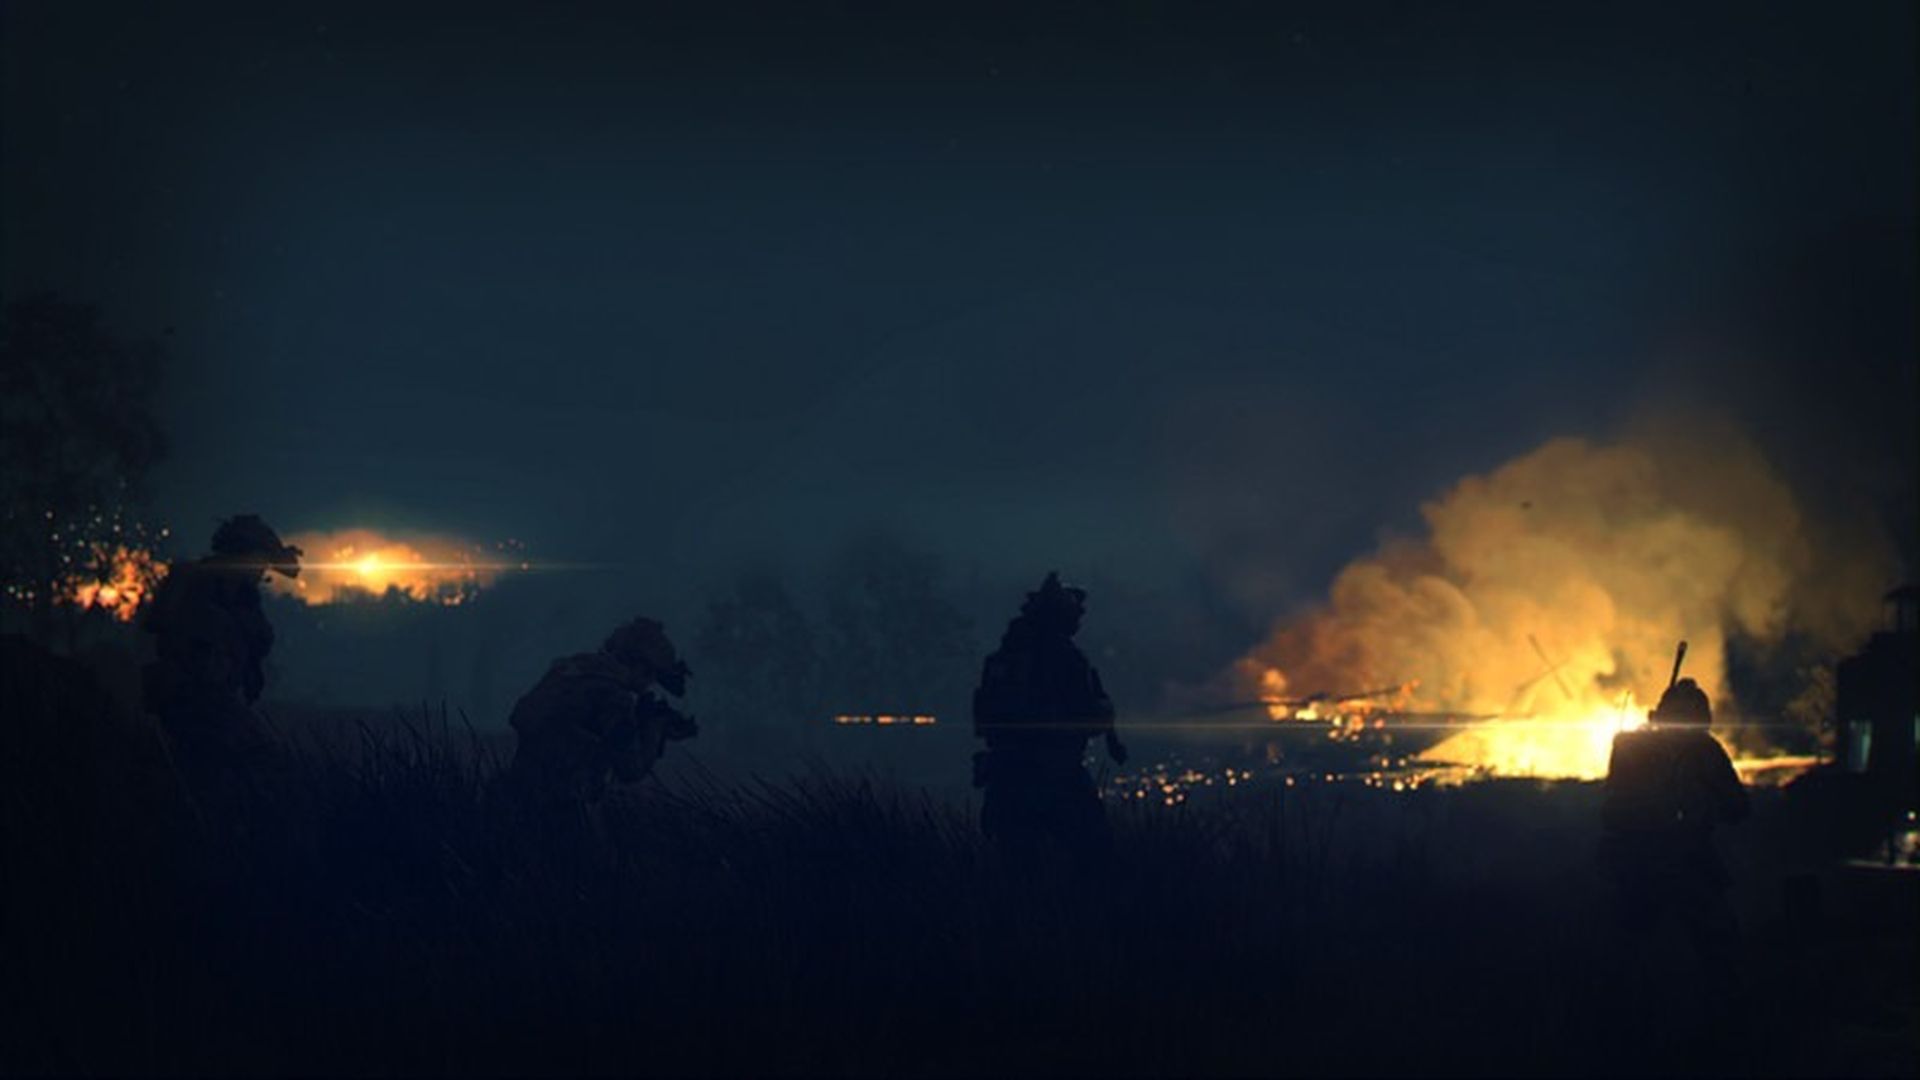 Les fans attendent Modern Warfare 2 depuis longtemps.  Maintenant que nous avons enfin la bande-annonce officielle, approfondissons les détails sur la date de sortie, les mods de jeu et plus encore.